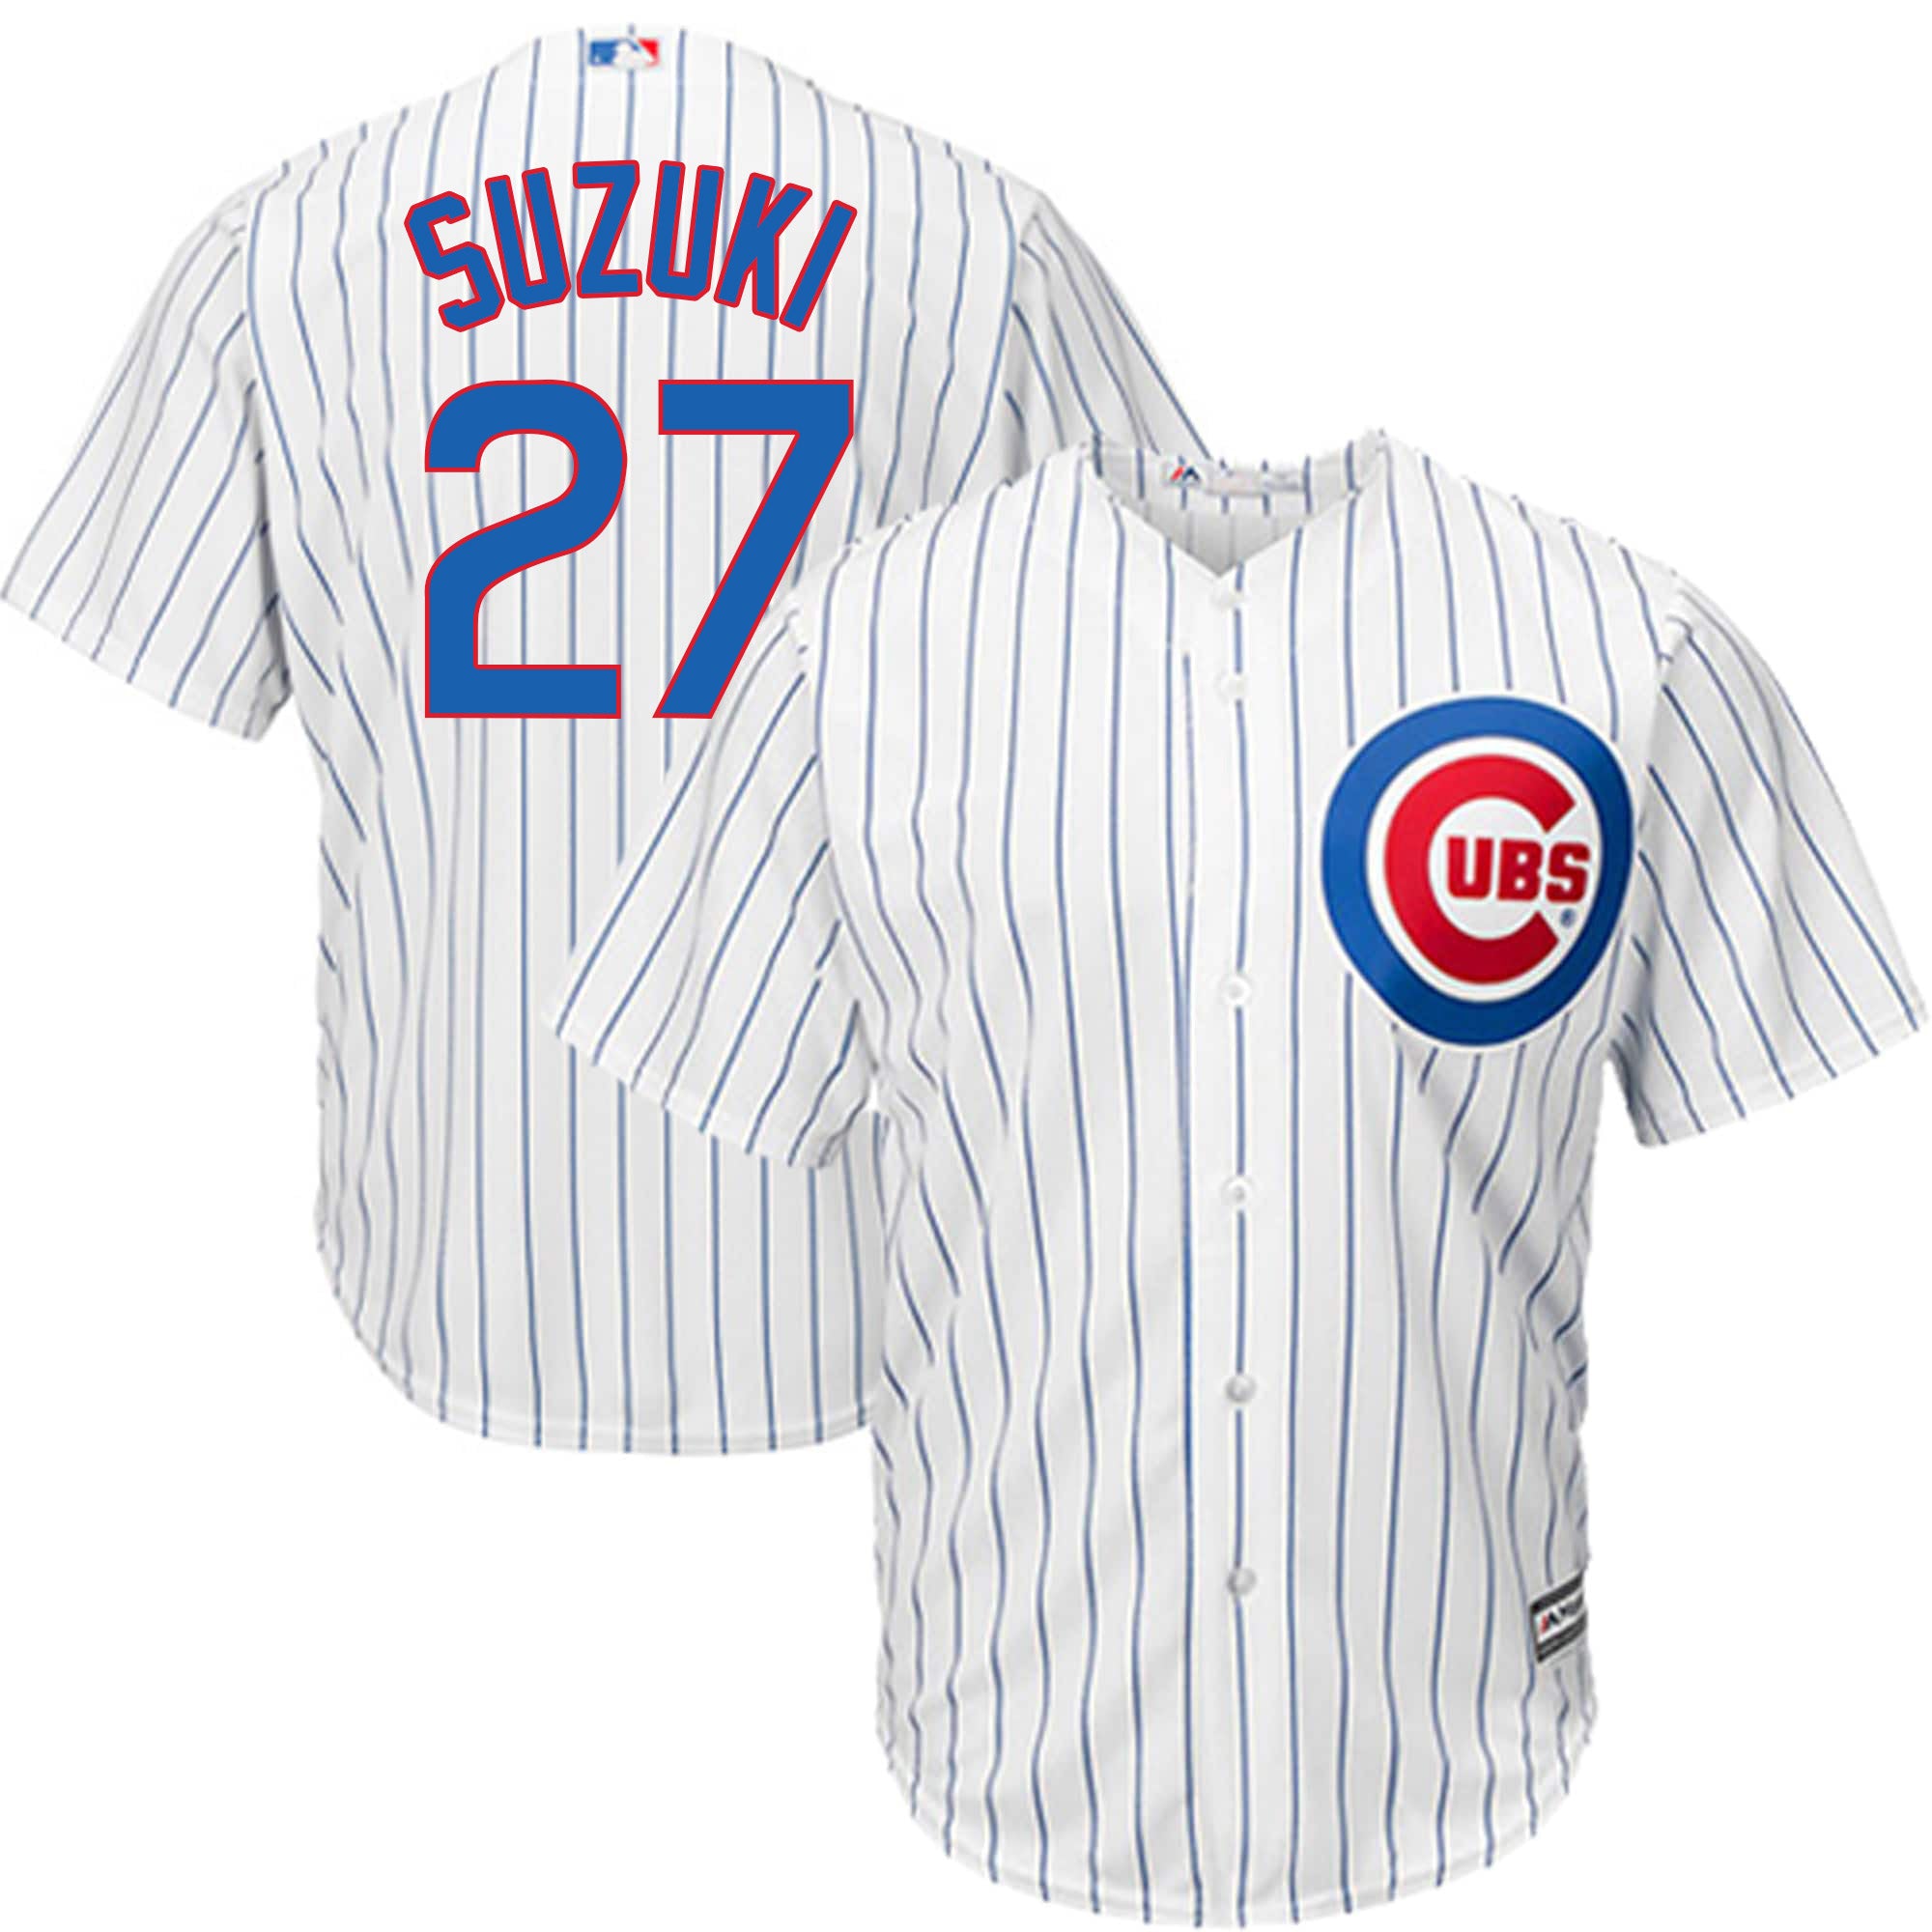 SEIYA LATER SHIRT Seiya Suzuki, Chicago Cubs - Ellieshirt